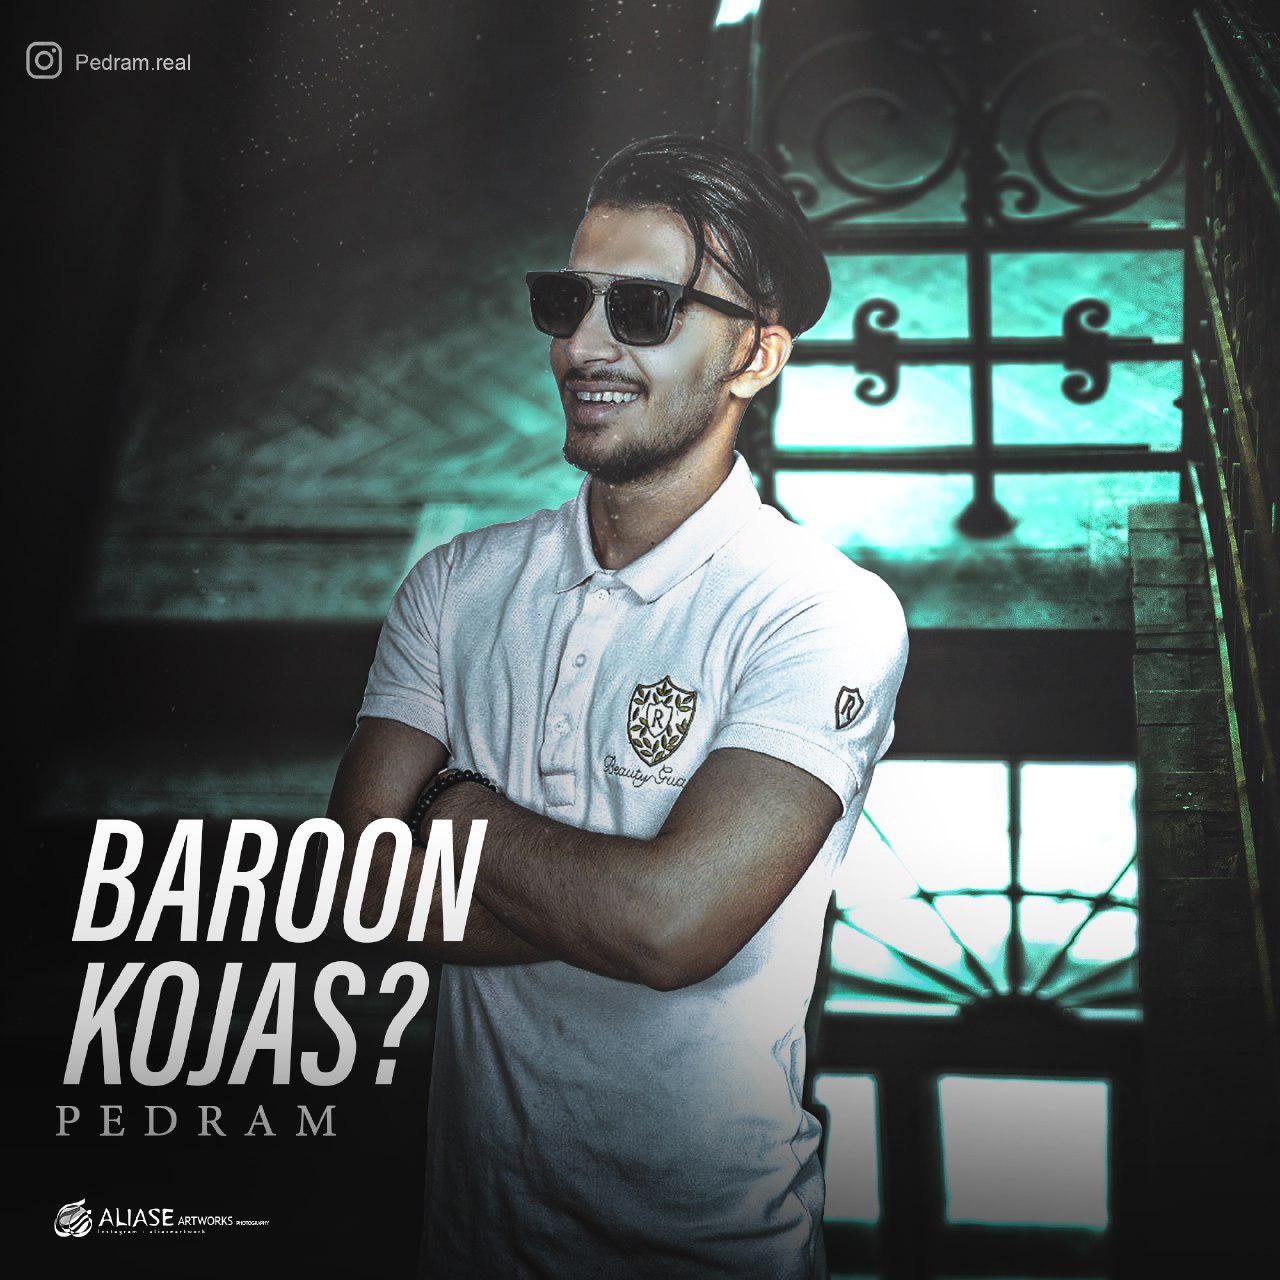  دانلود آهنگ جدید پدرام - بارون کجاس؟ | Download New Music By Pedram  - Baroon Kojas?